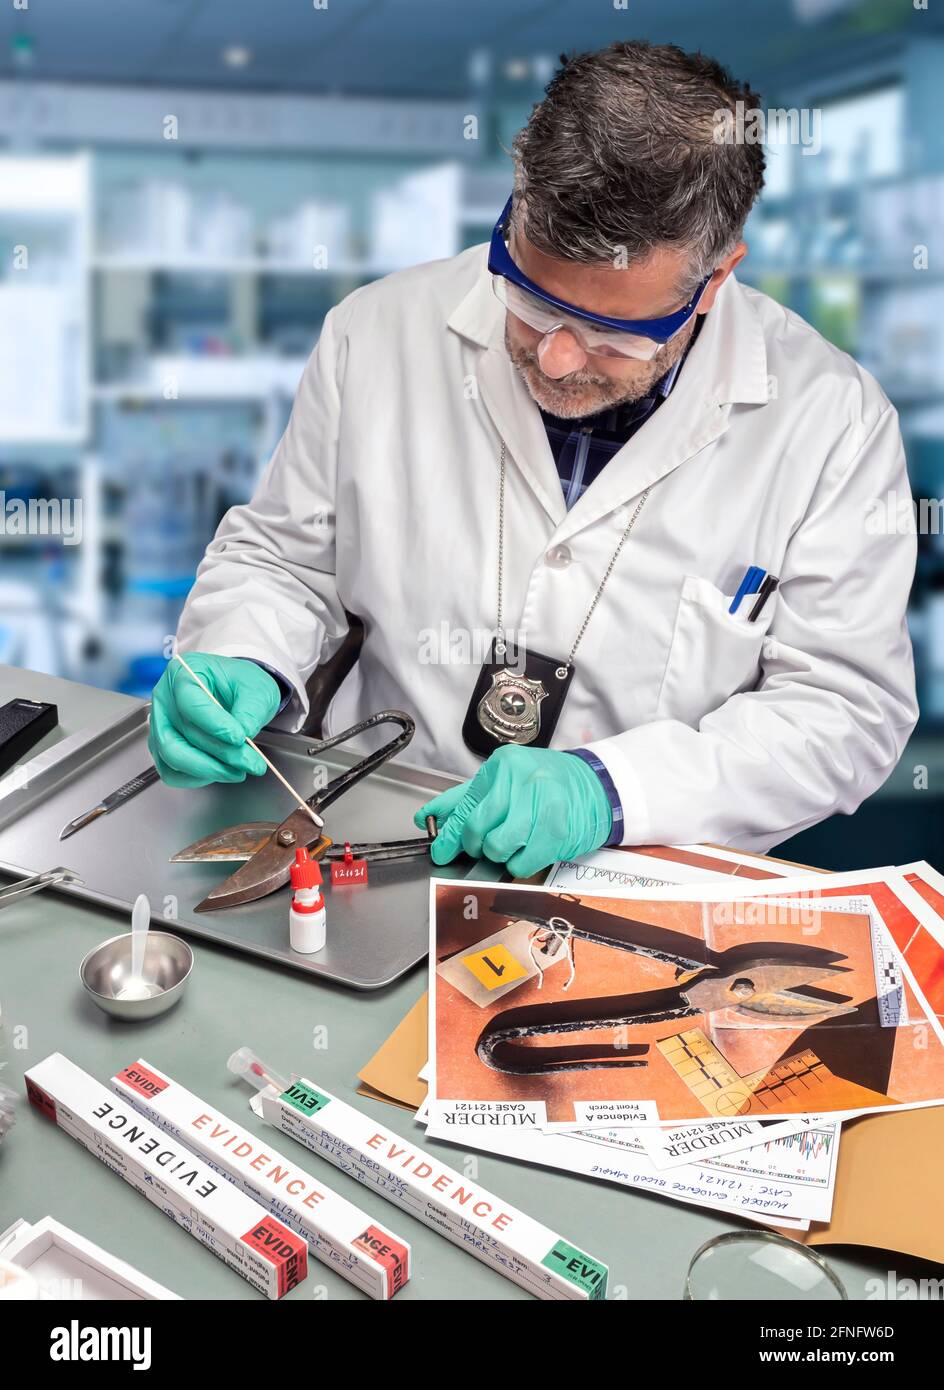 Un scientifique de police extrait un échantillon d'ADN d'une pince à épiler dans un laboratoire de crime, image conceptuelle Banque D'Images